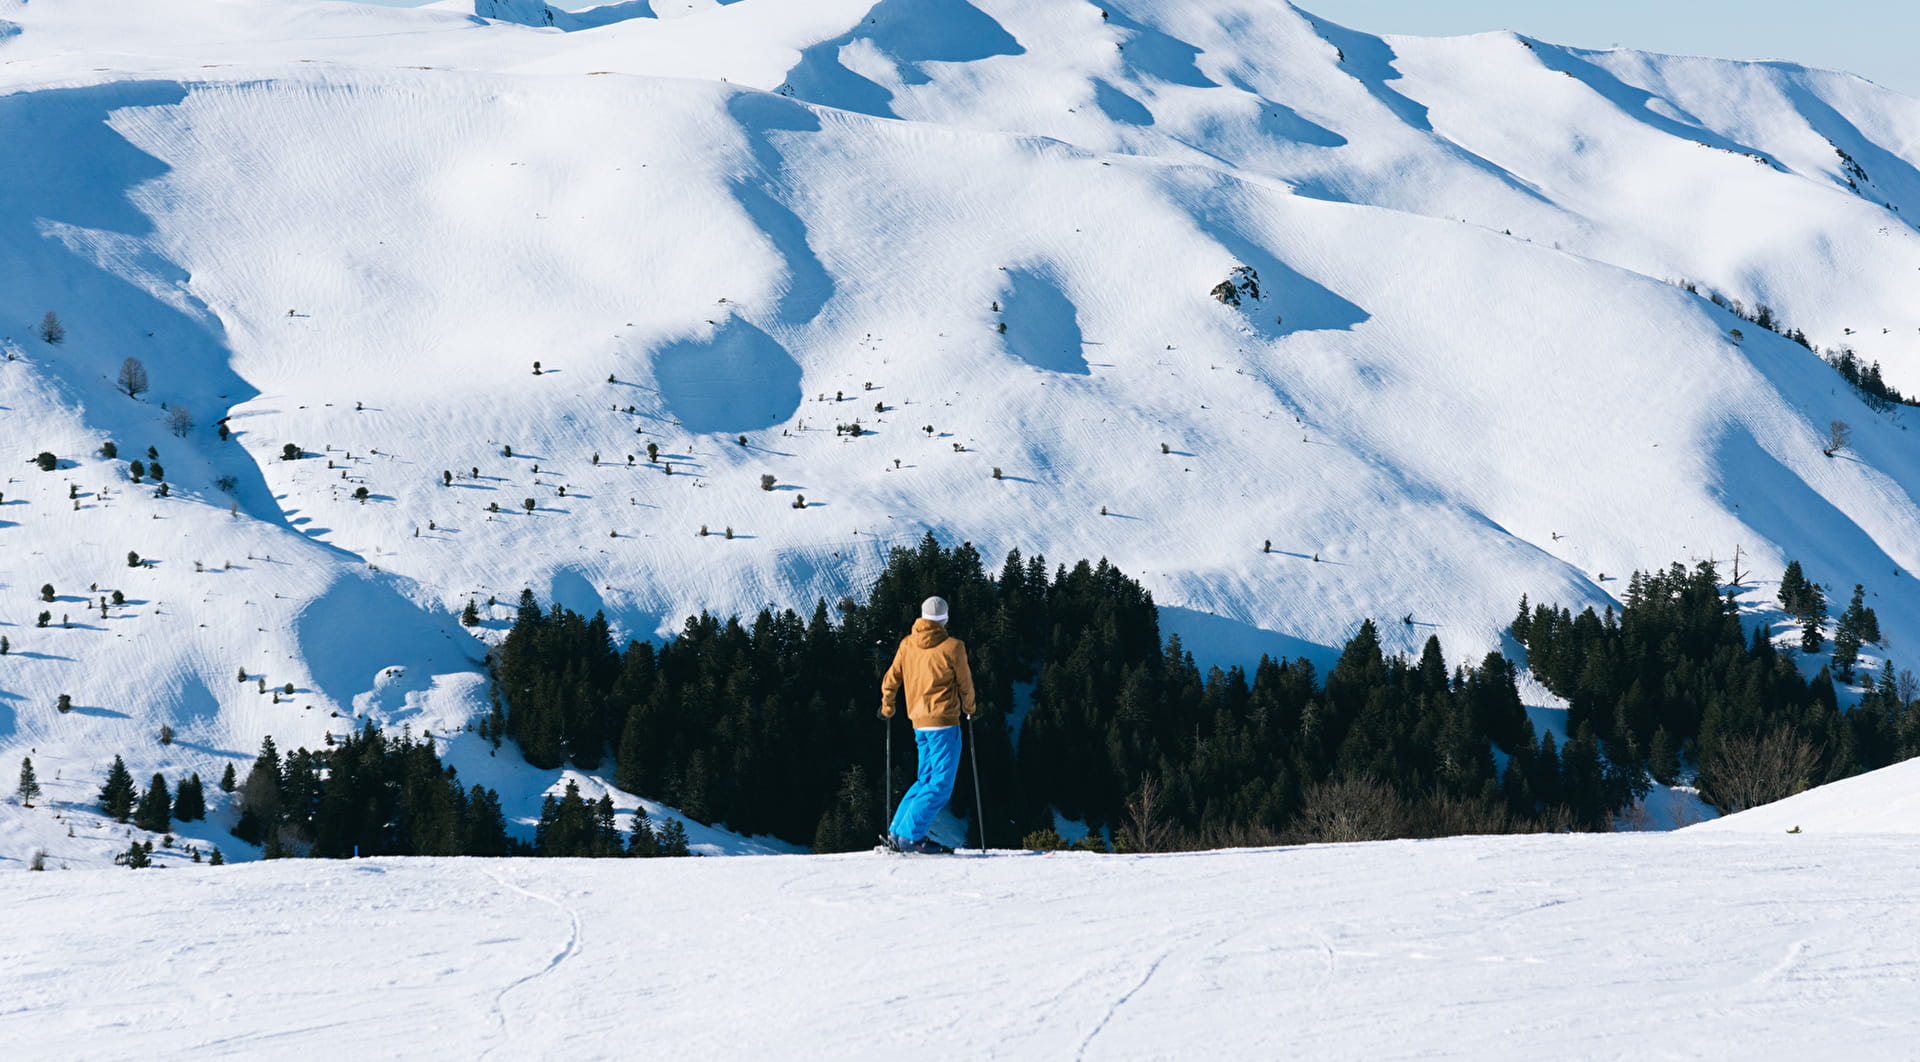 Alpine skier in the resort of Hautacam in the Pyrenees